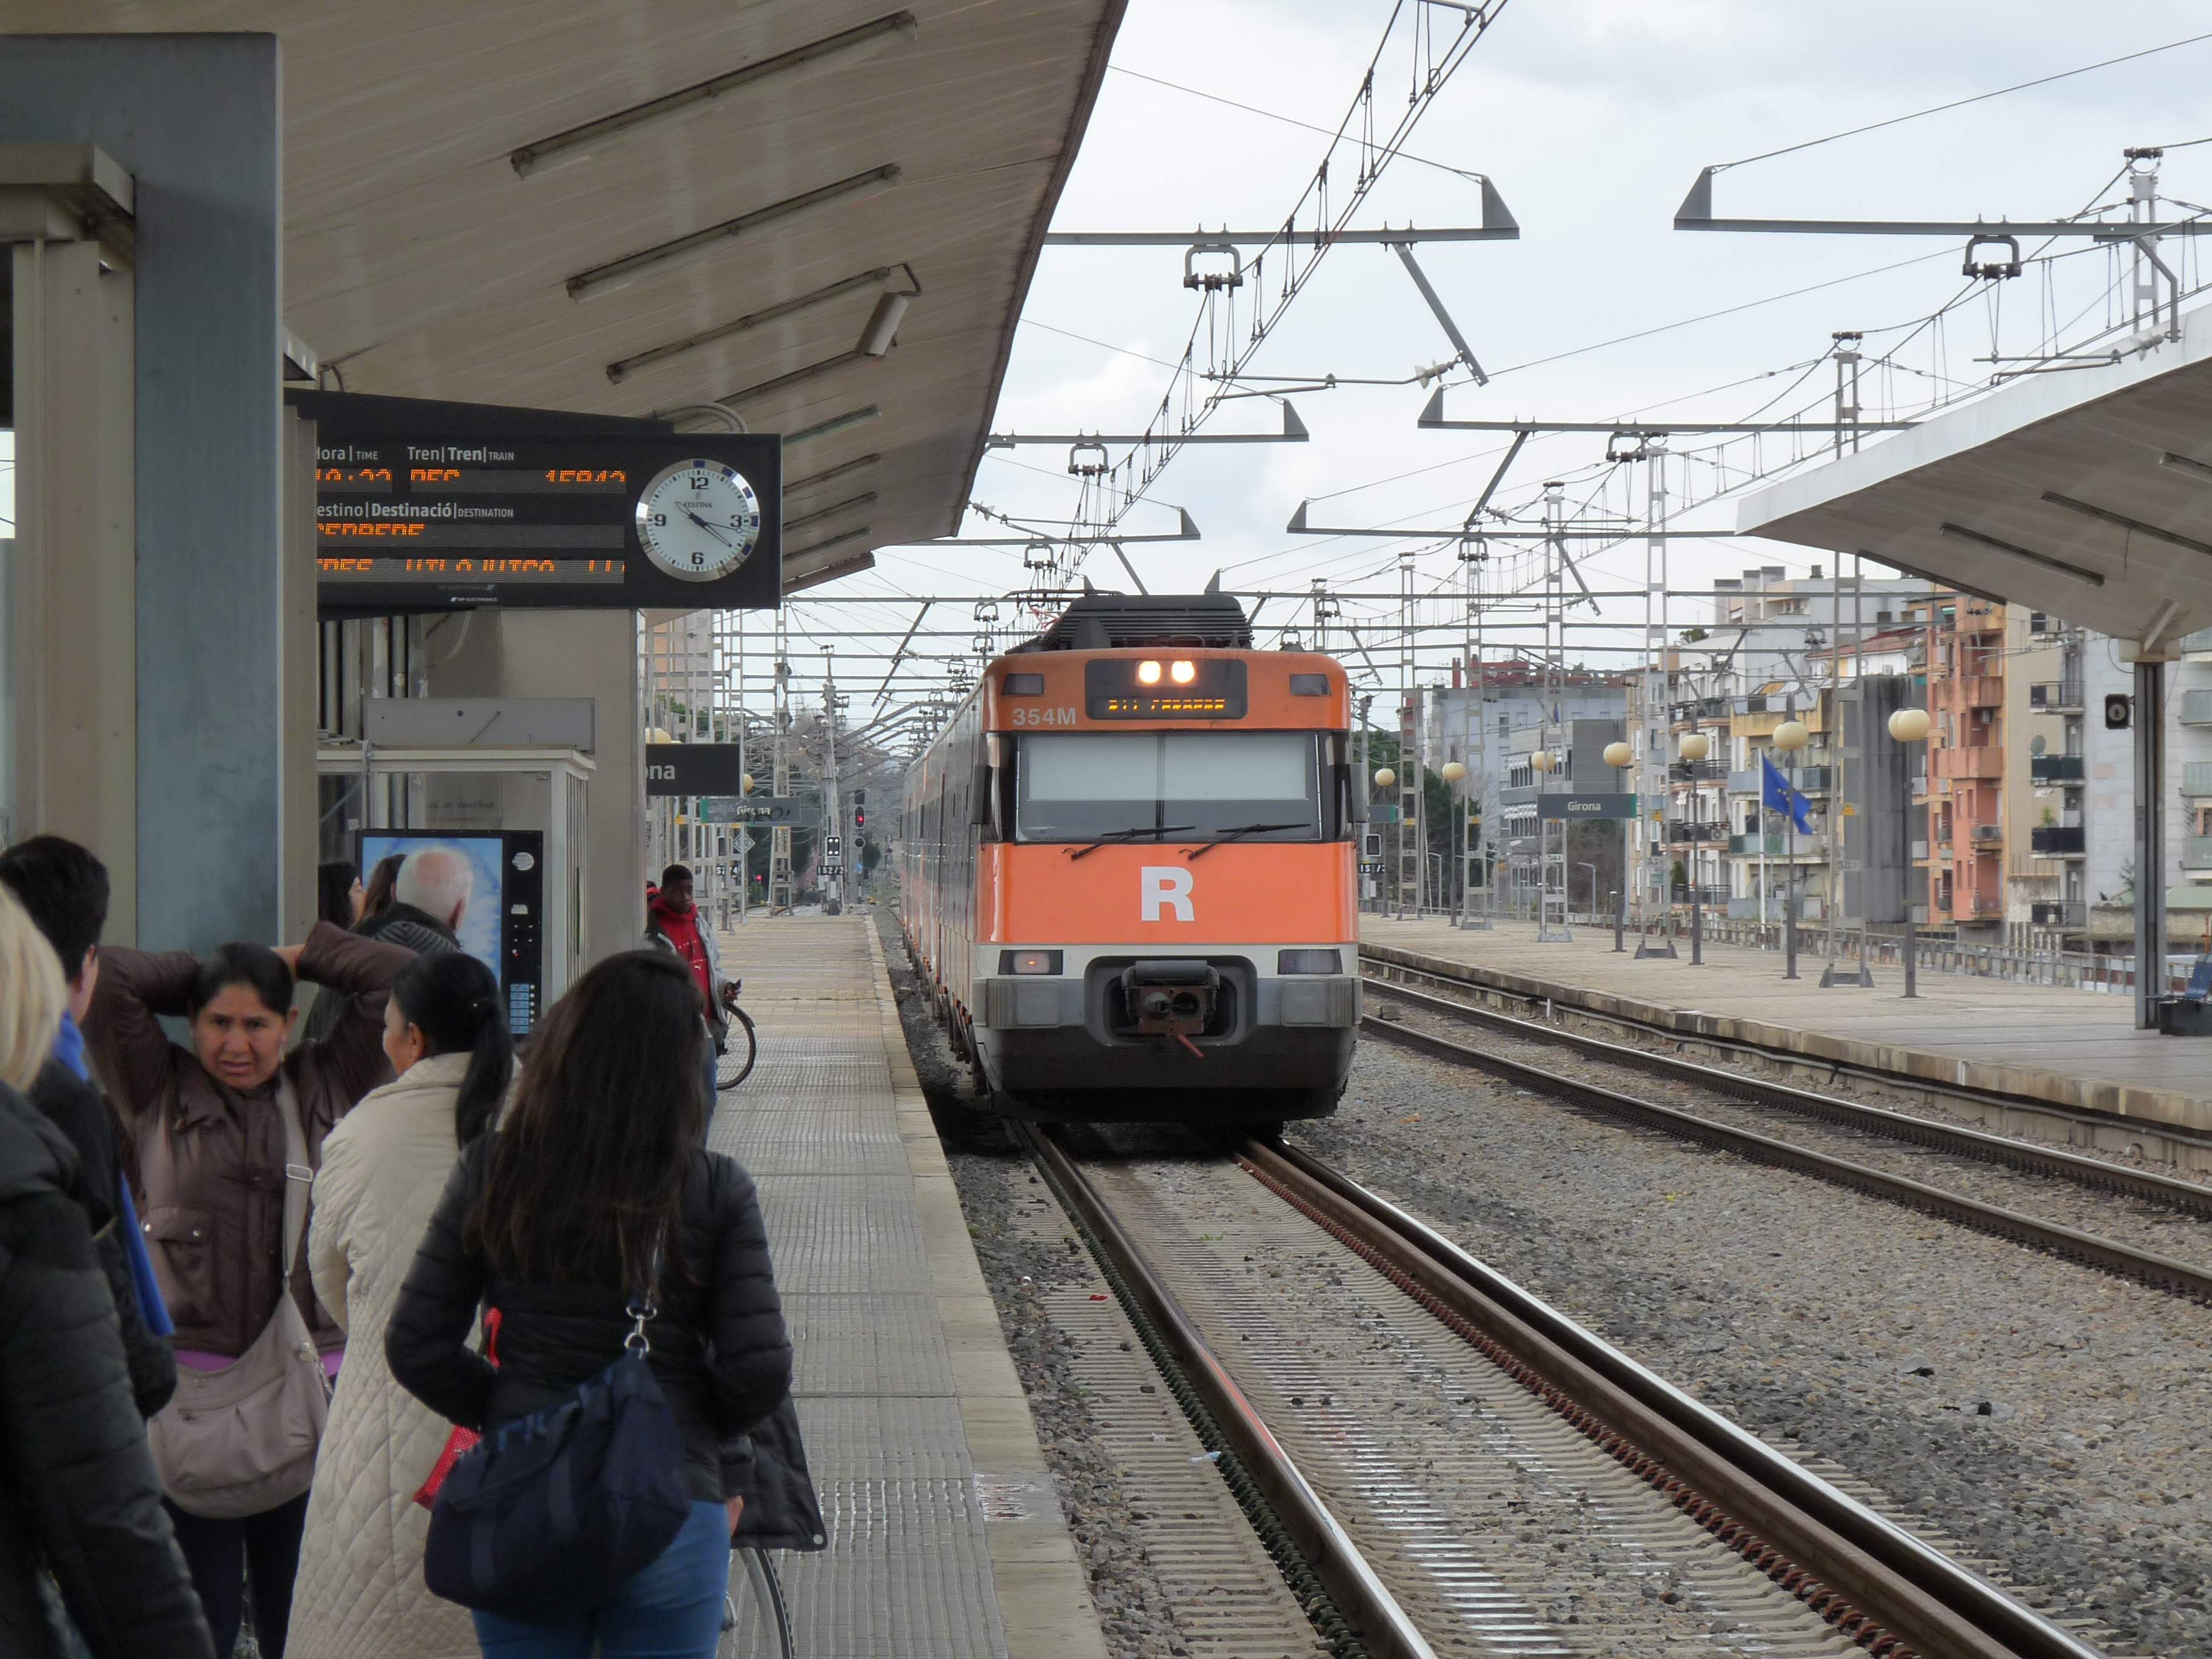 Un passatger de Rodalies ferit a Girona quan intentava aturar un robatori violent a bord d'un tren